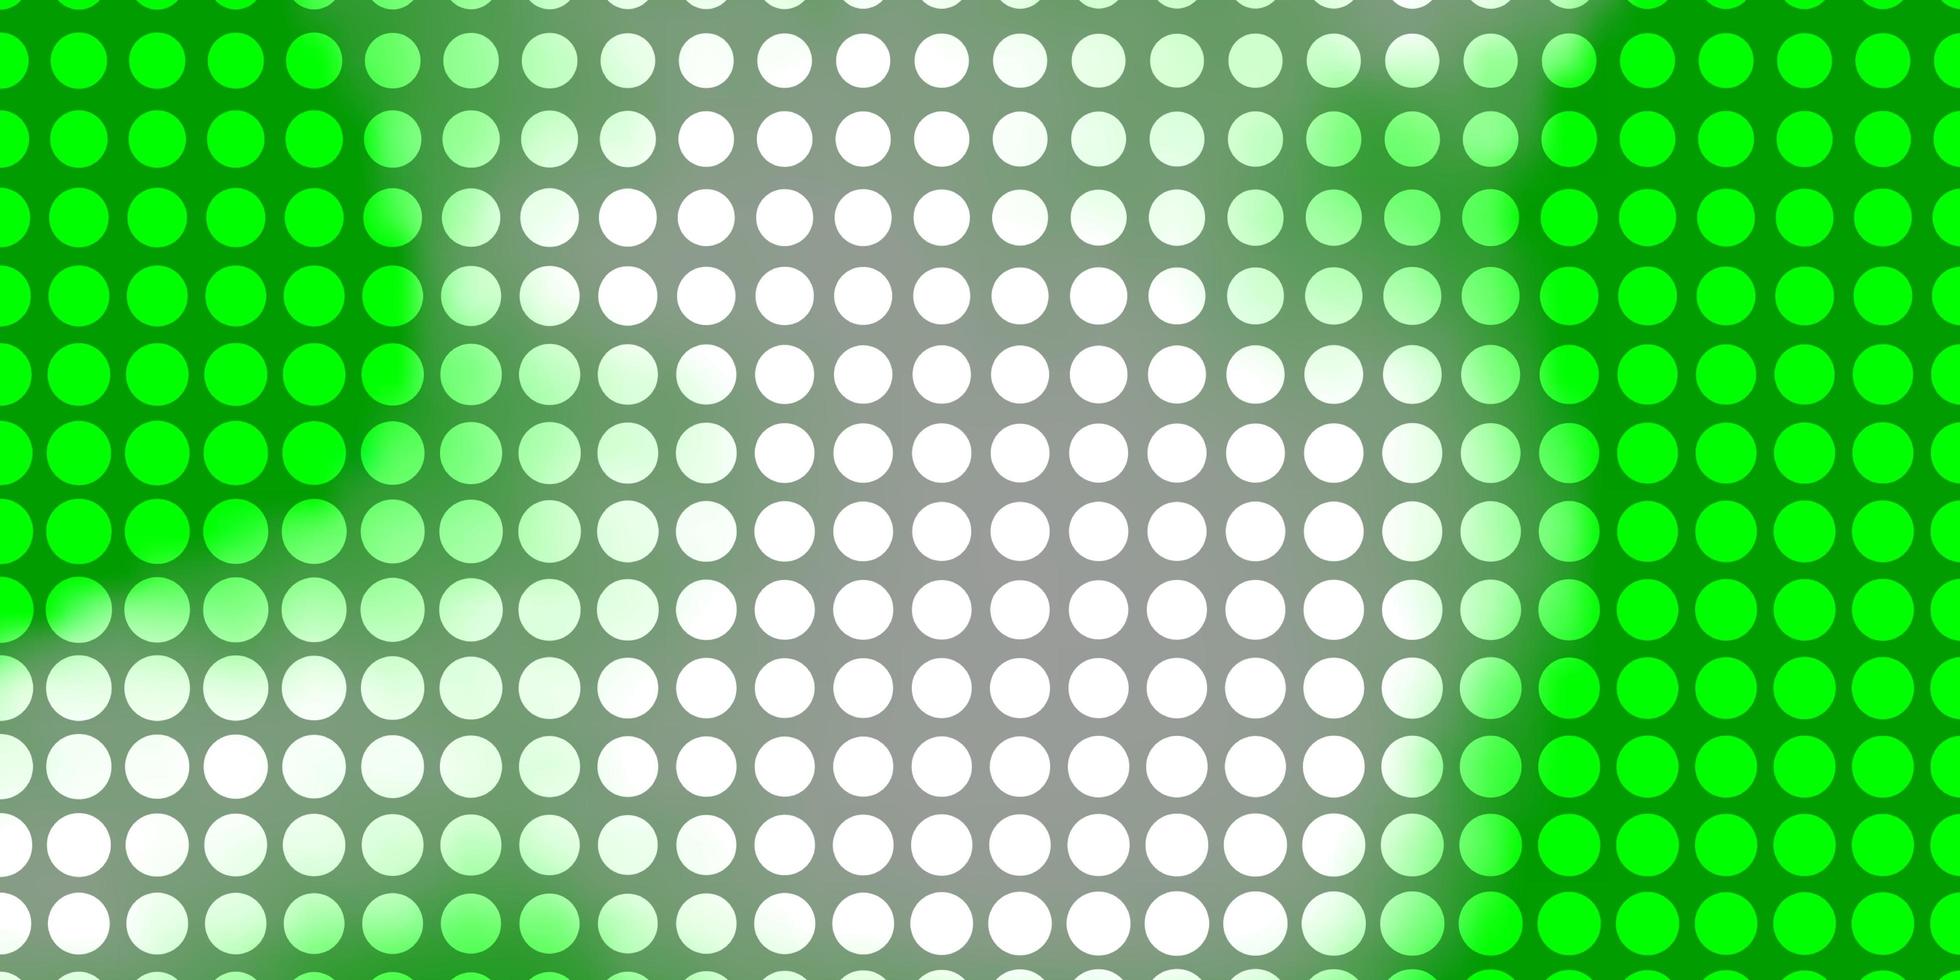 texture vettoriale verde chiaro con cerchi.